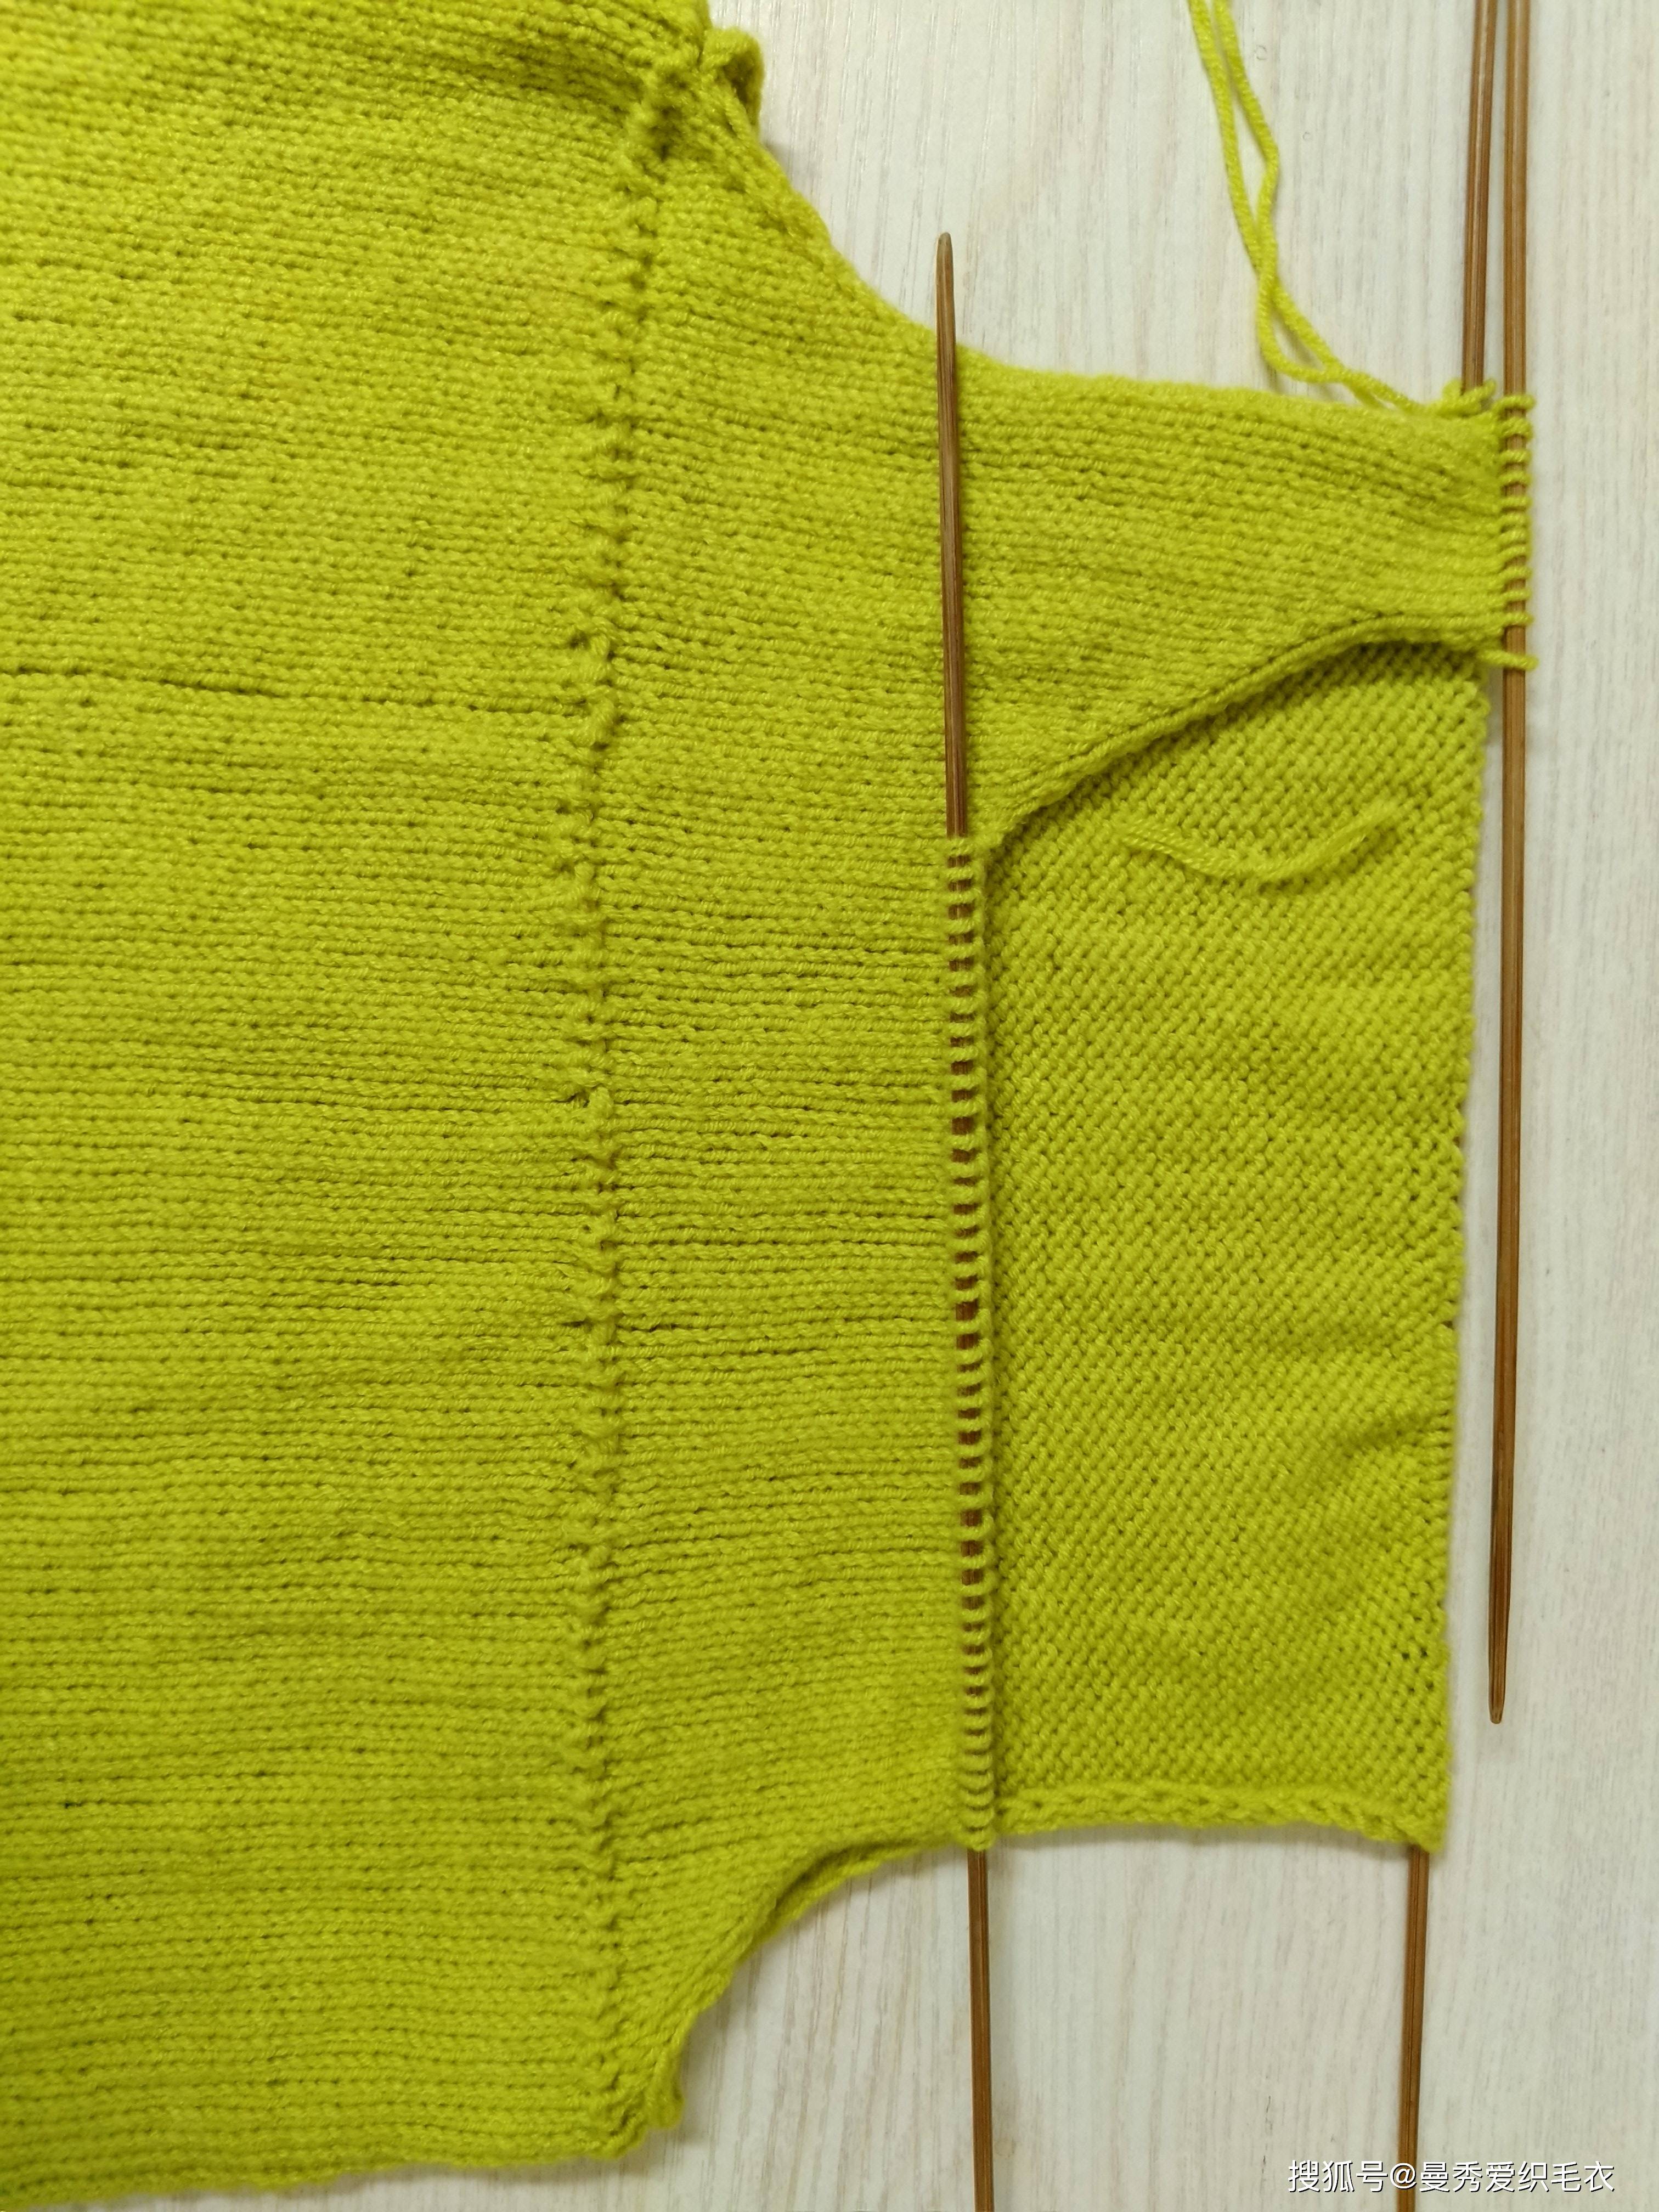 再织9cm收针;把两个袖子缝合后,利用剩线钩一个蝴蝶结做装饰,整件毛衣